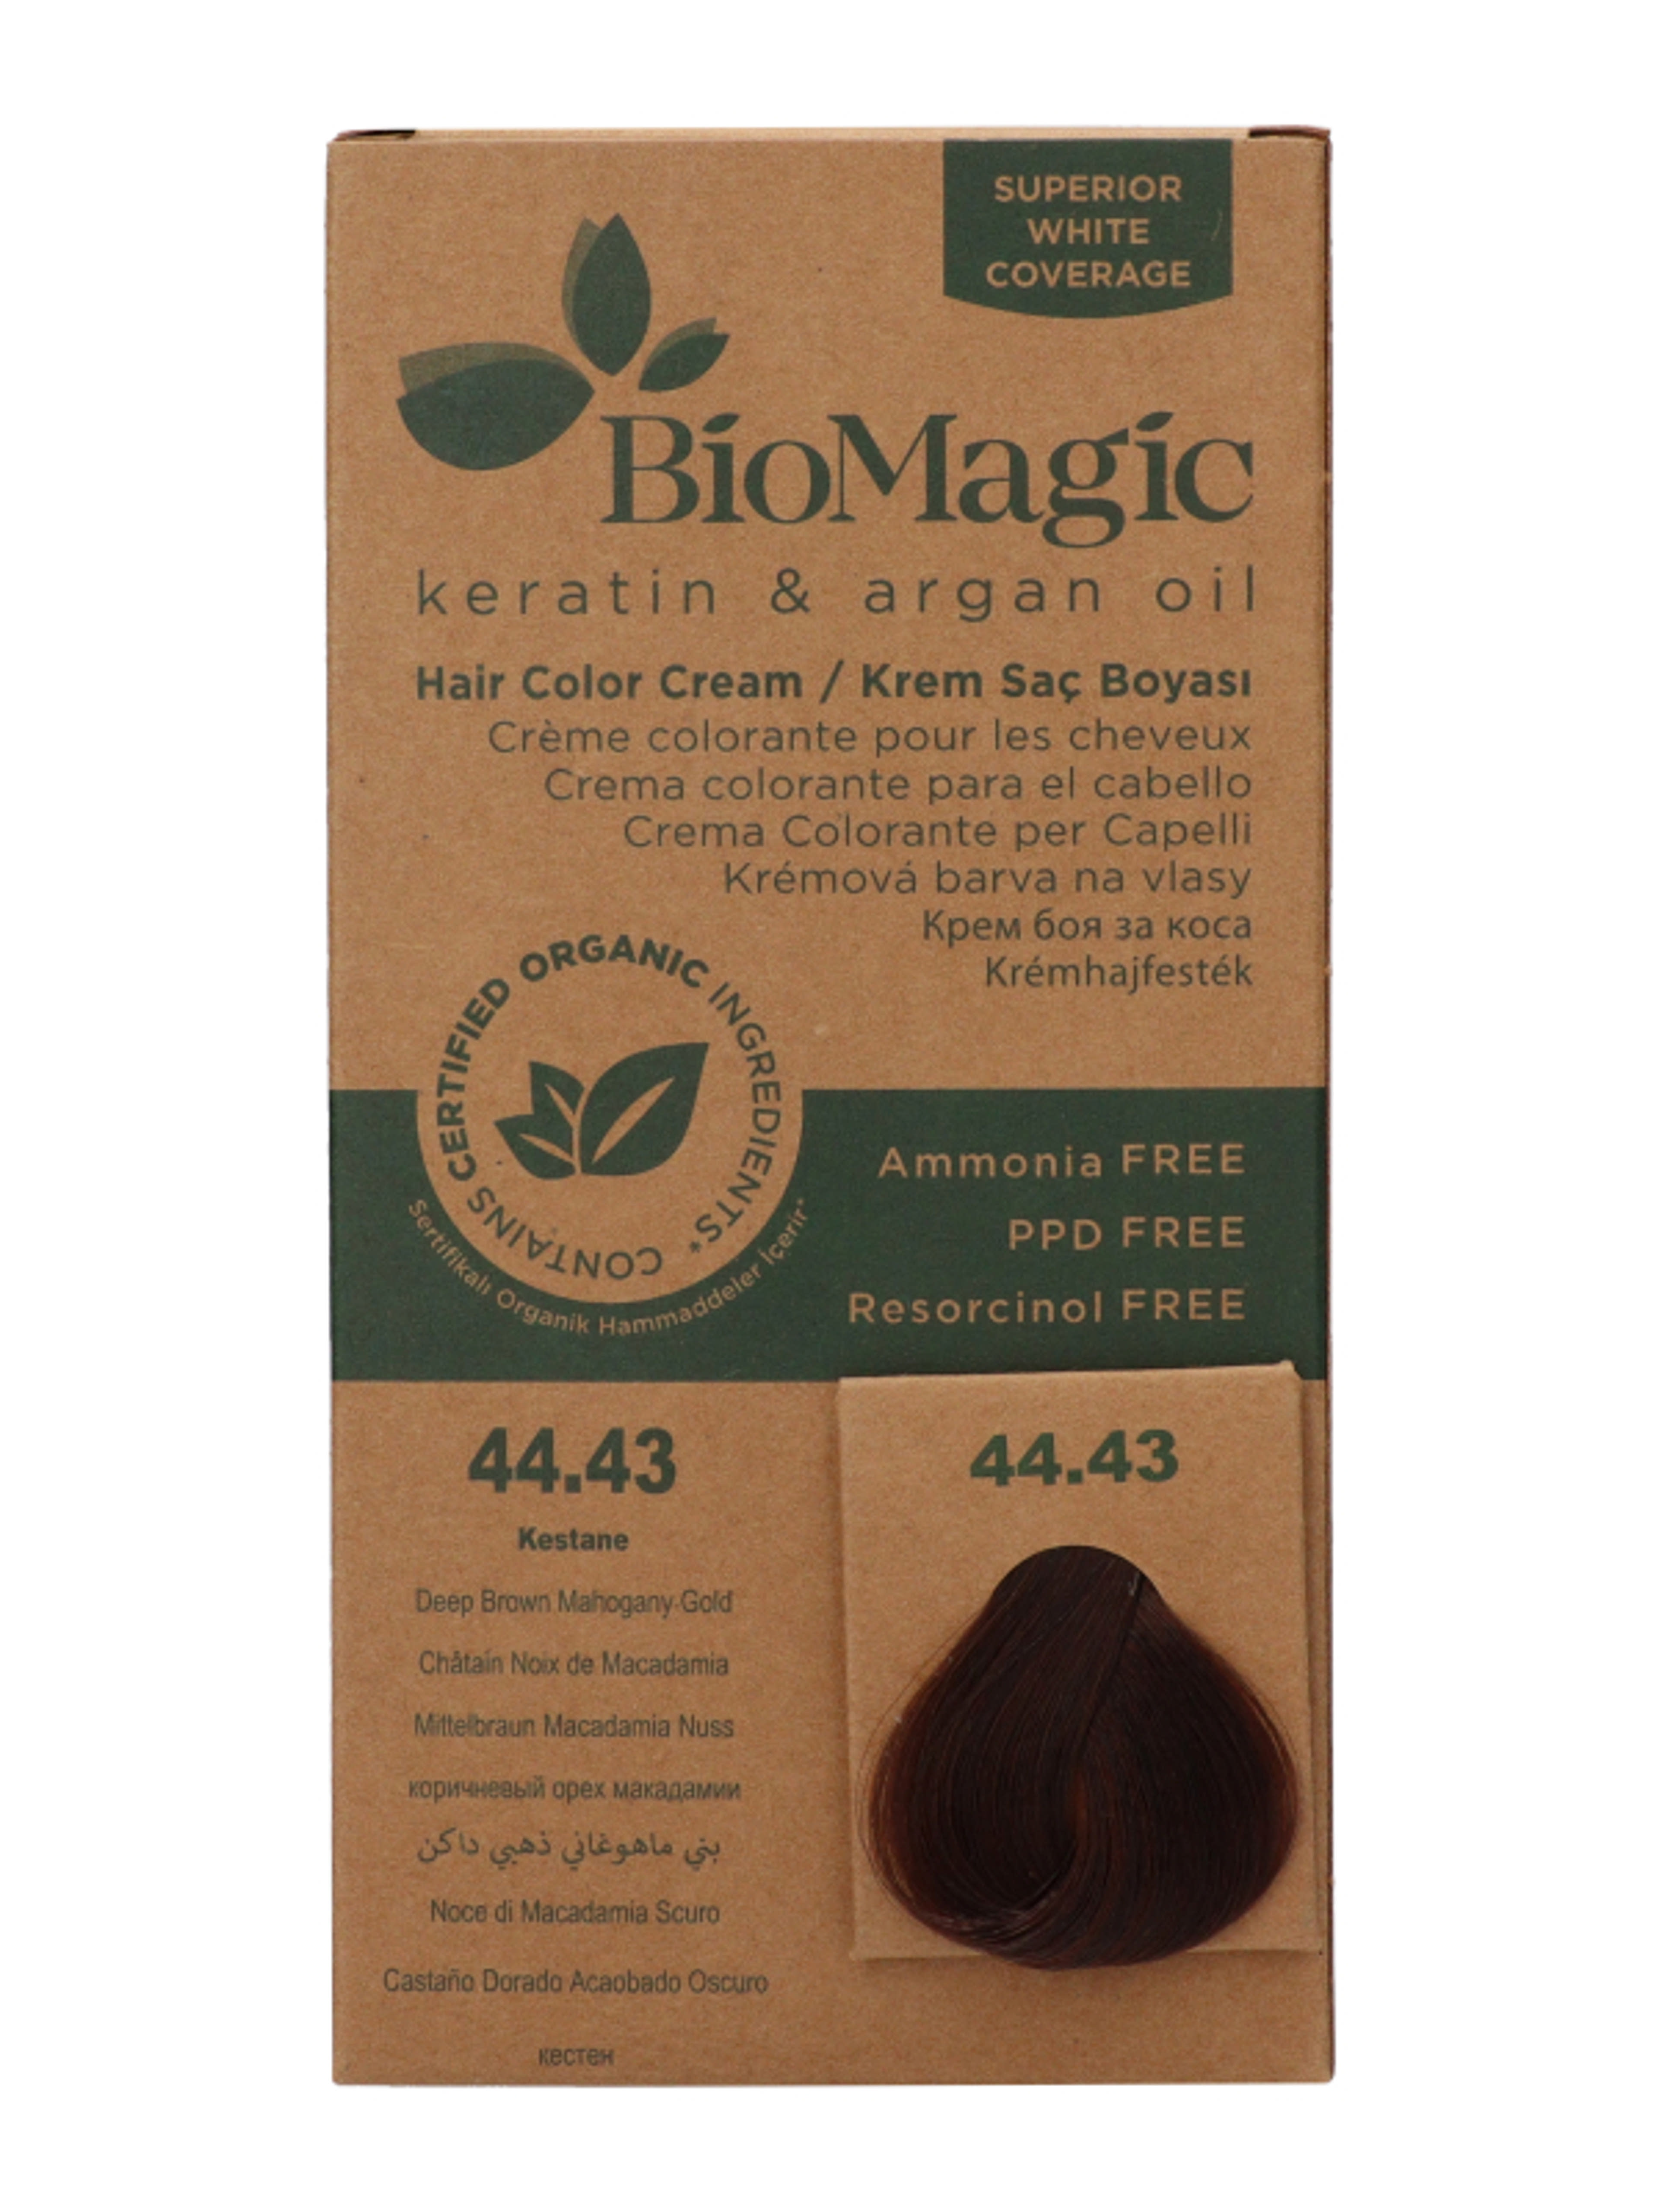 Biomagic hajfesték 44.43 arany mahagoni mély barna - 1 db